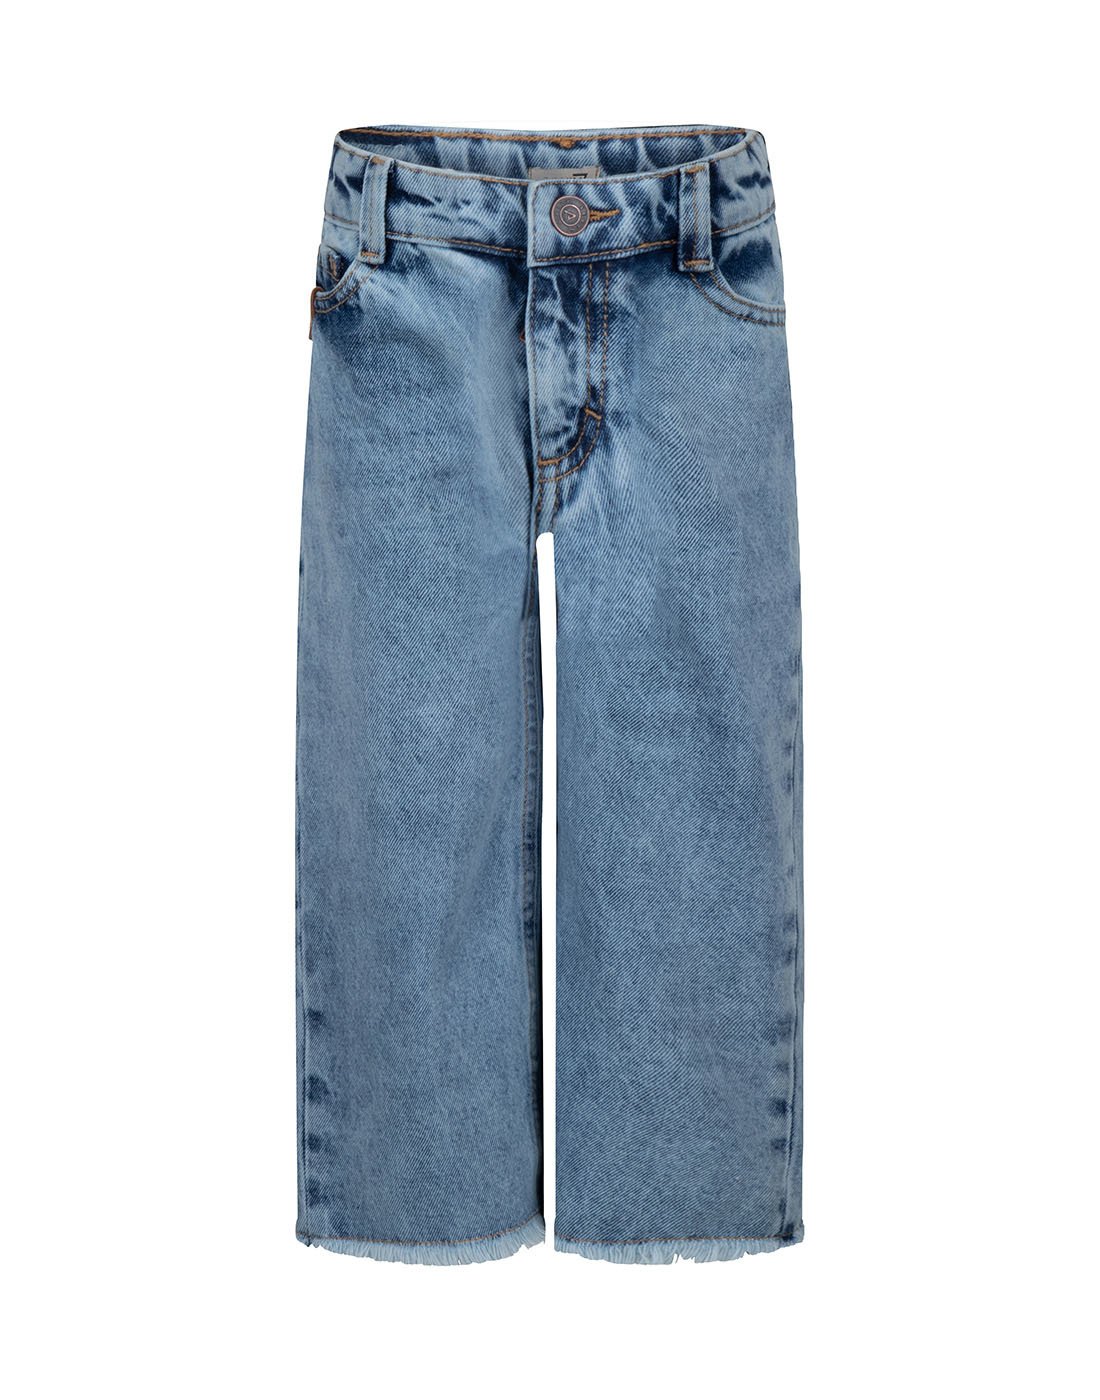 Daily7 Meisjes jeans broek - wide fit - Light Denim